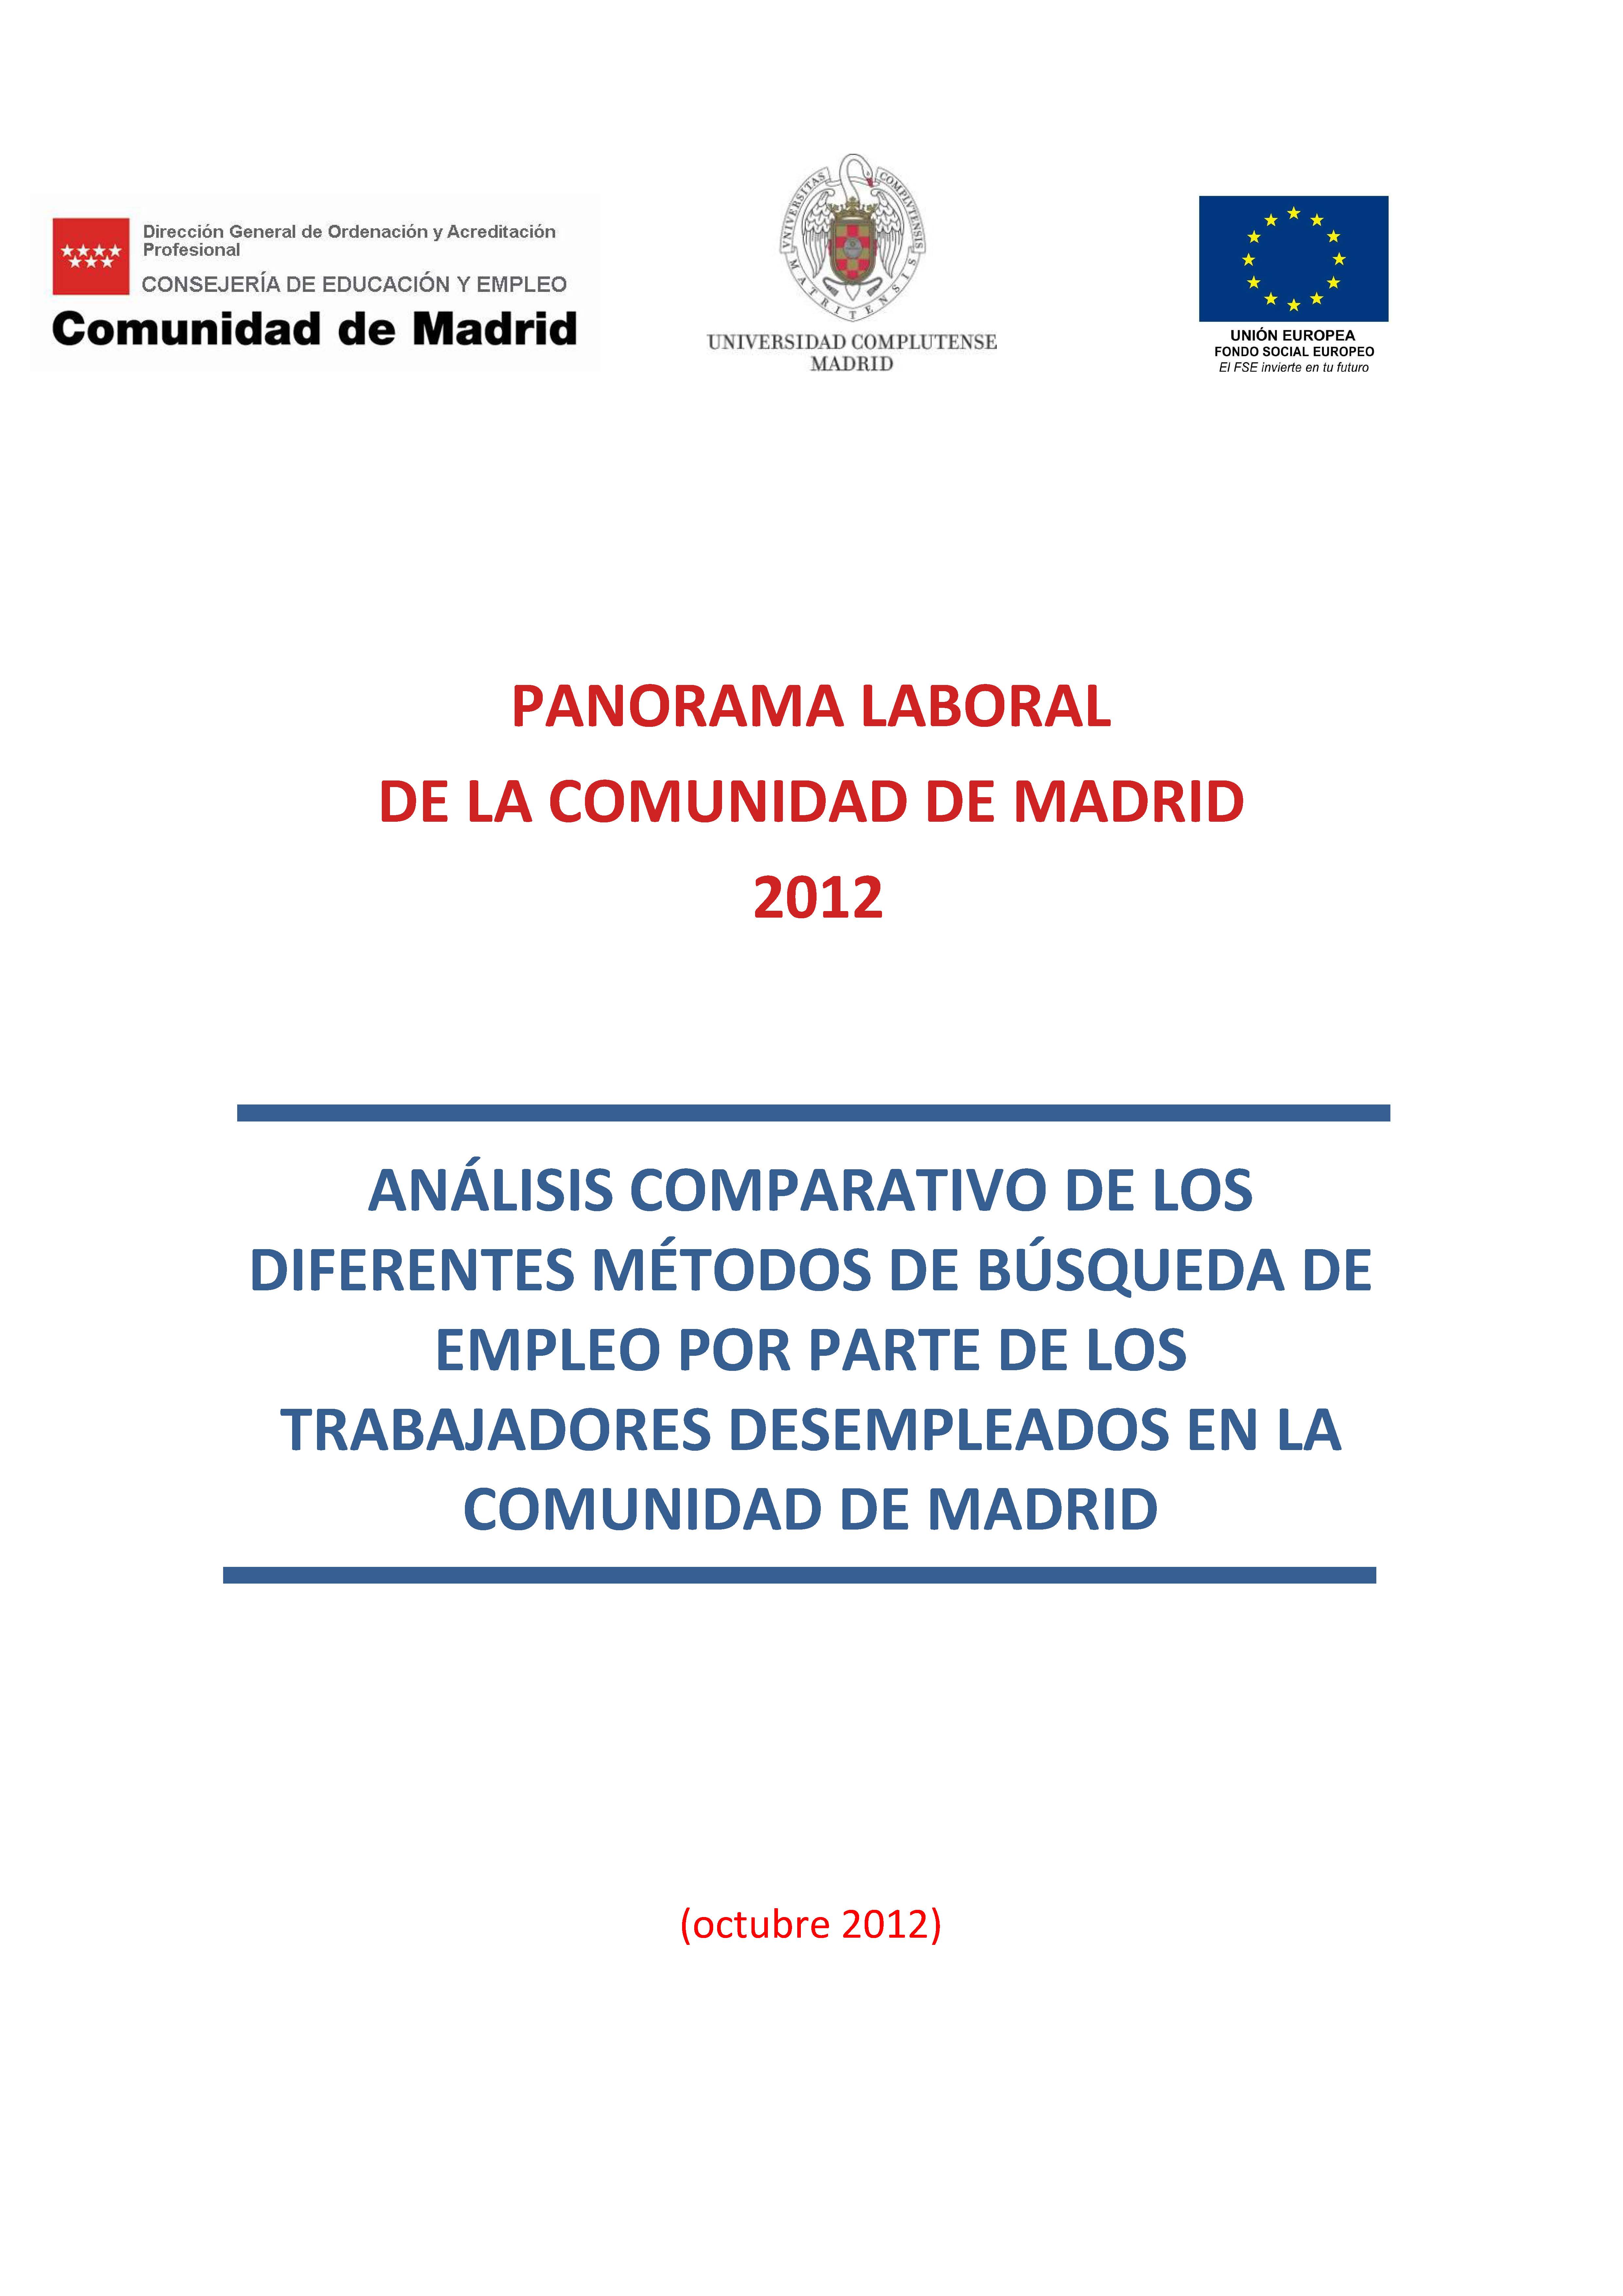 Portada de Panorama Laboral 2012. Análisis comparativo de los diferentes métodos de búsqueda de empleo por parte de los trabajadores desempleados en la Comunidad de Madrid.